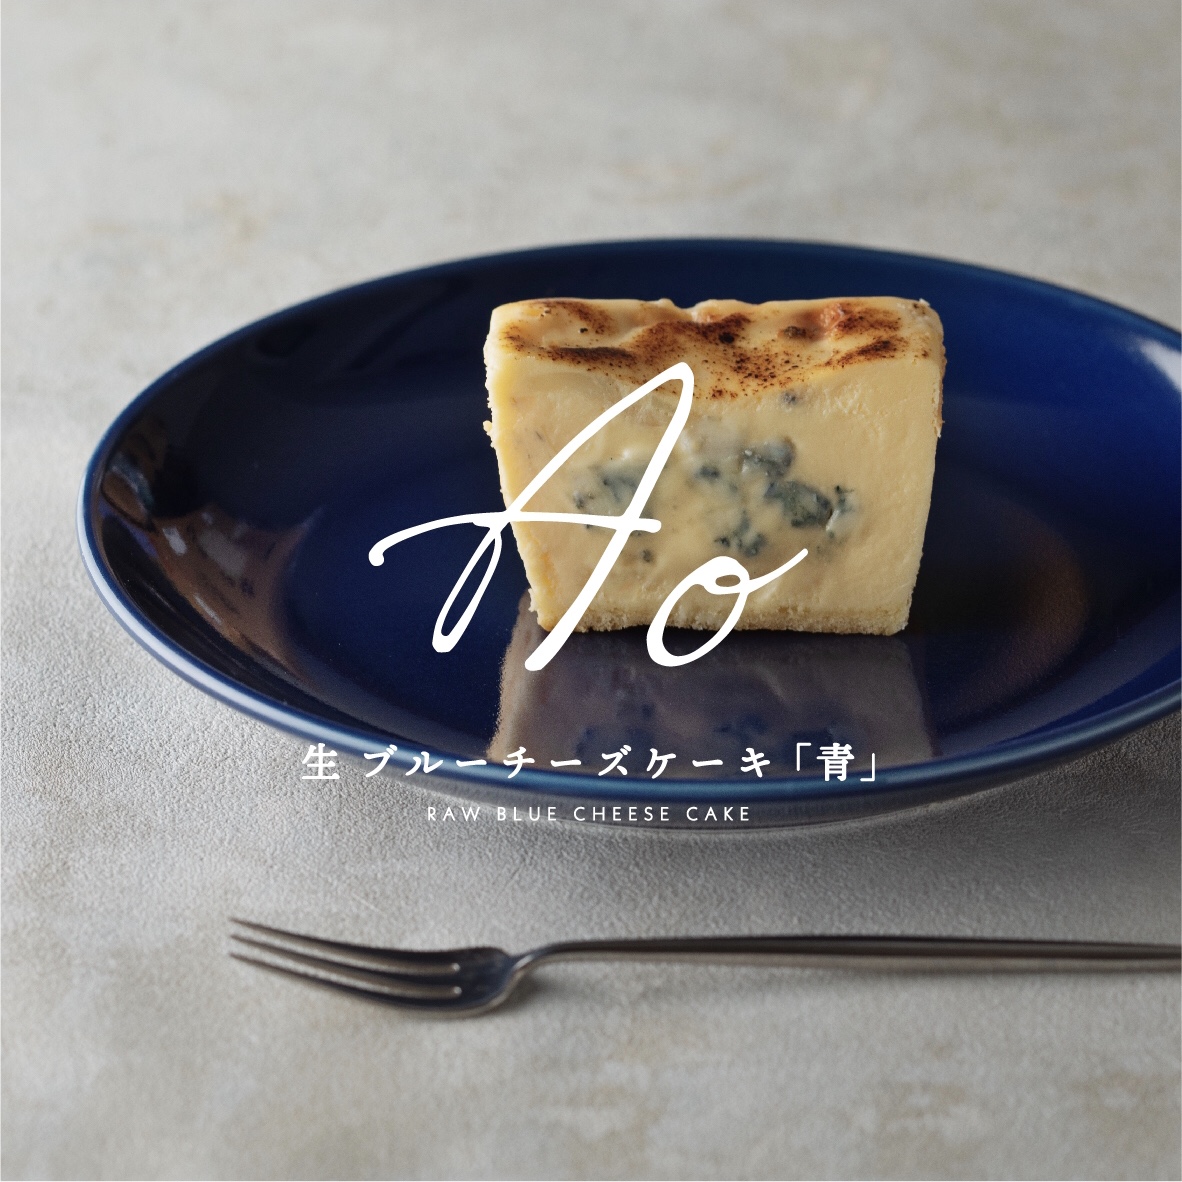 生ブルーチーズケーキ専門店 Ao 青 が大名のグラナリーカフェで期間限定販売 九州初上陸 青 と新商品 濃い青 フクオカーノ